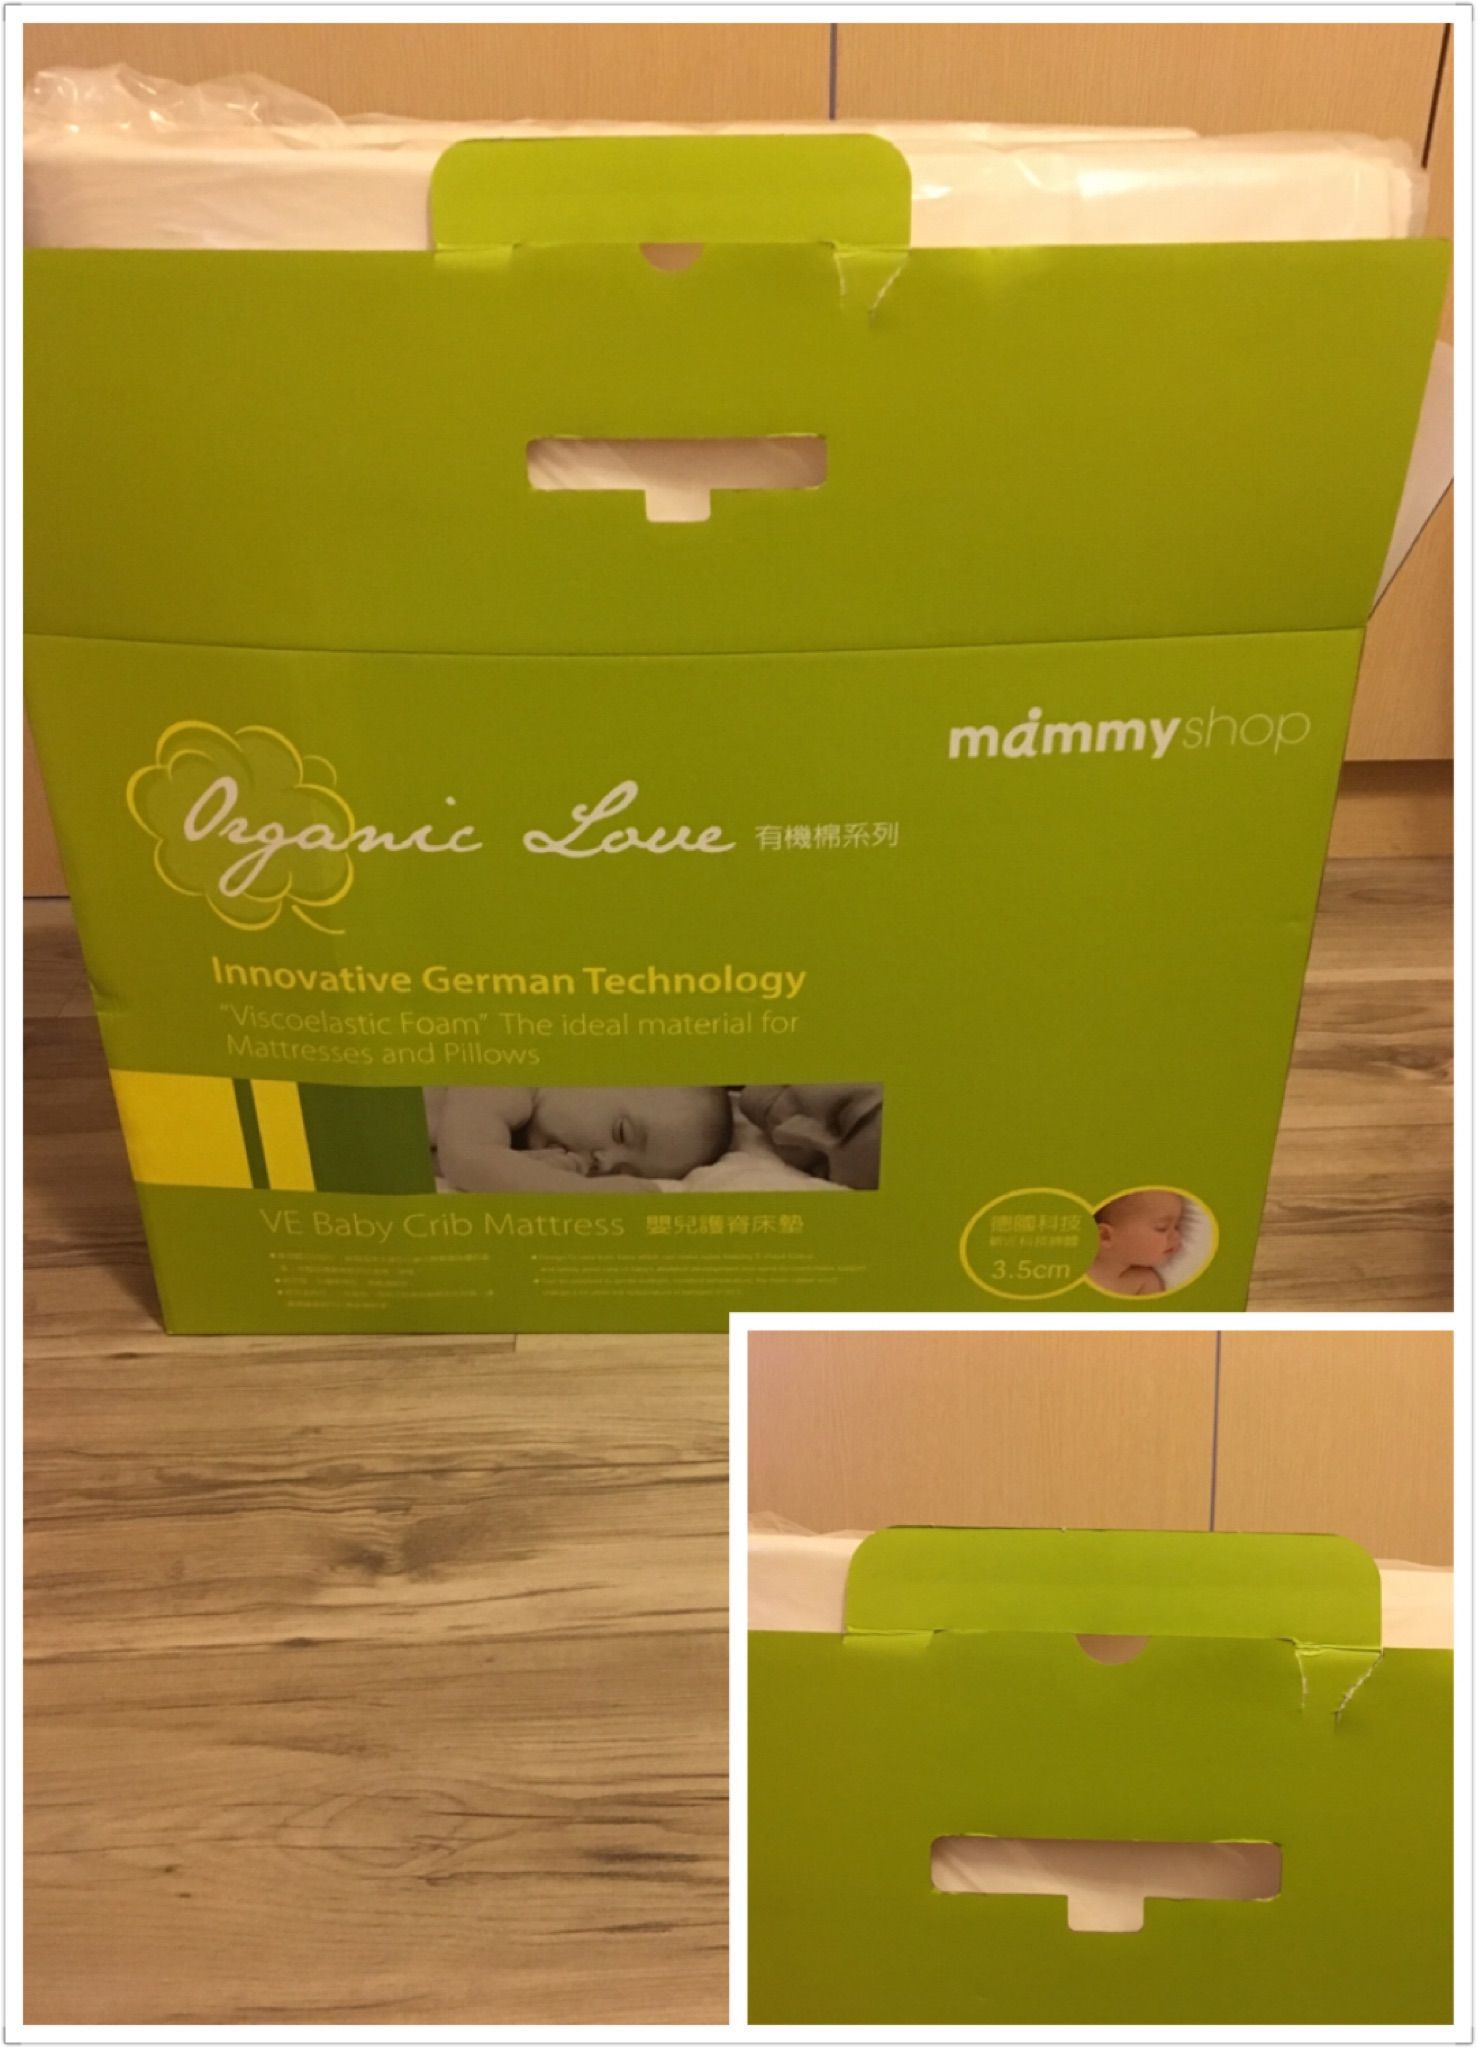 售 「全新免運」-mammyshop媽咪小站 有機棉系列嬰兒護脊床墊3.5cm (M)